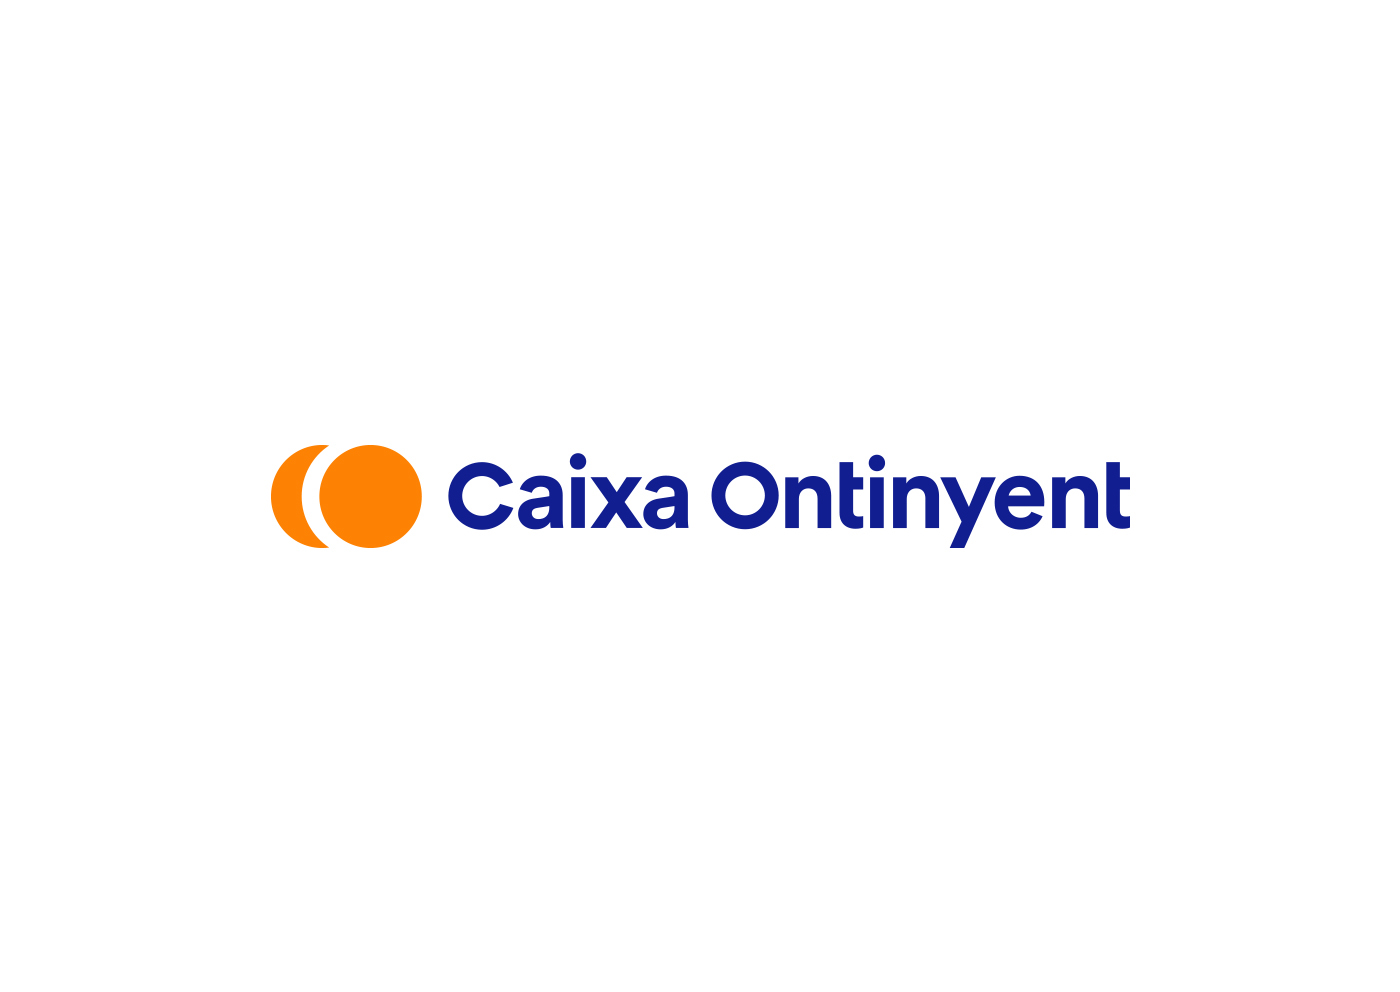 1._Caixa_Ontinyent